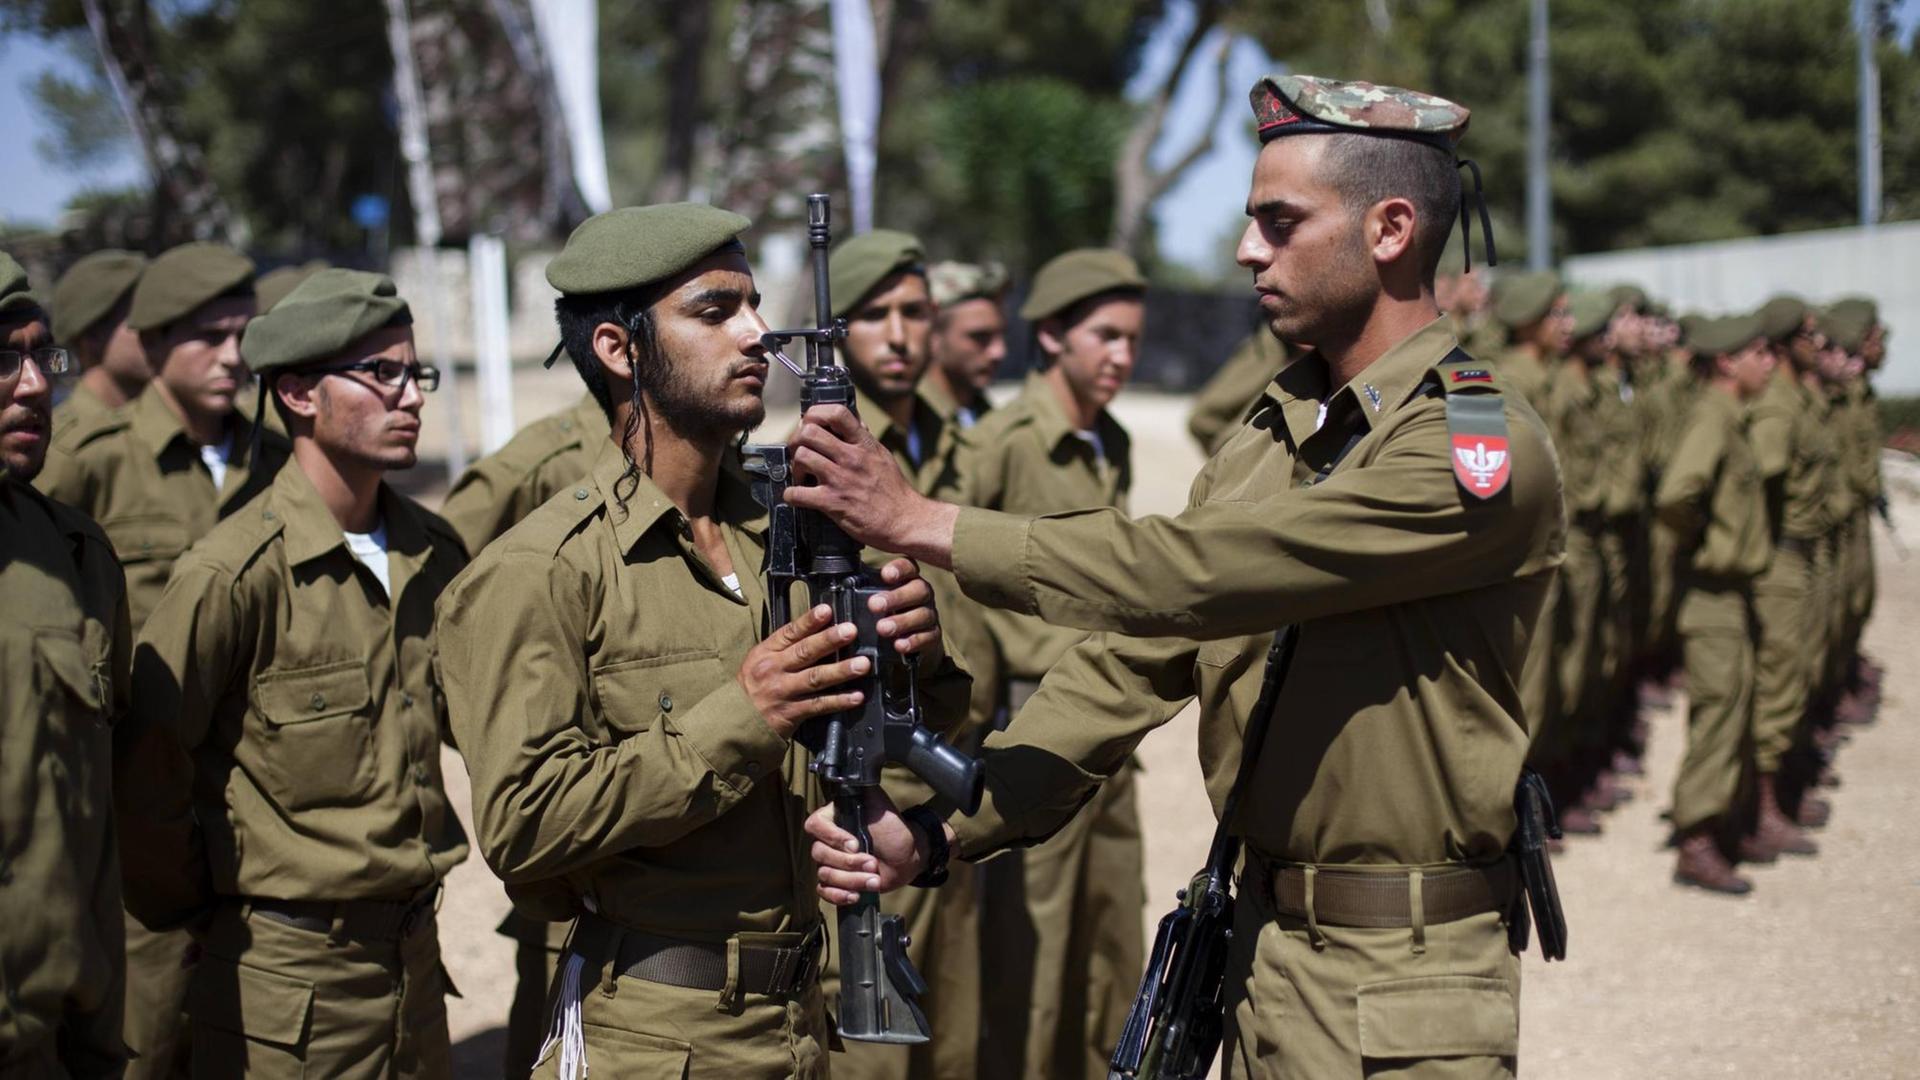 Jüdisch-orthodoxe und ultraorthodoxe Soldaten des Netzah Yehuda Bataillons der israelischen Verteidigungskräfte (IDF) bei ihrer Treuebekundungszeremonie am Ammunition Hill Denkmal in Jerusalem.